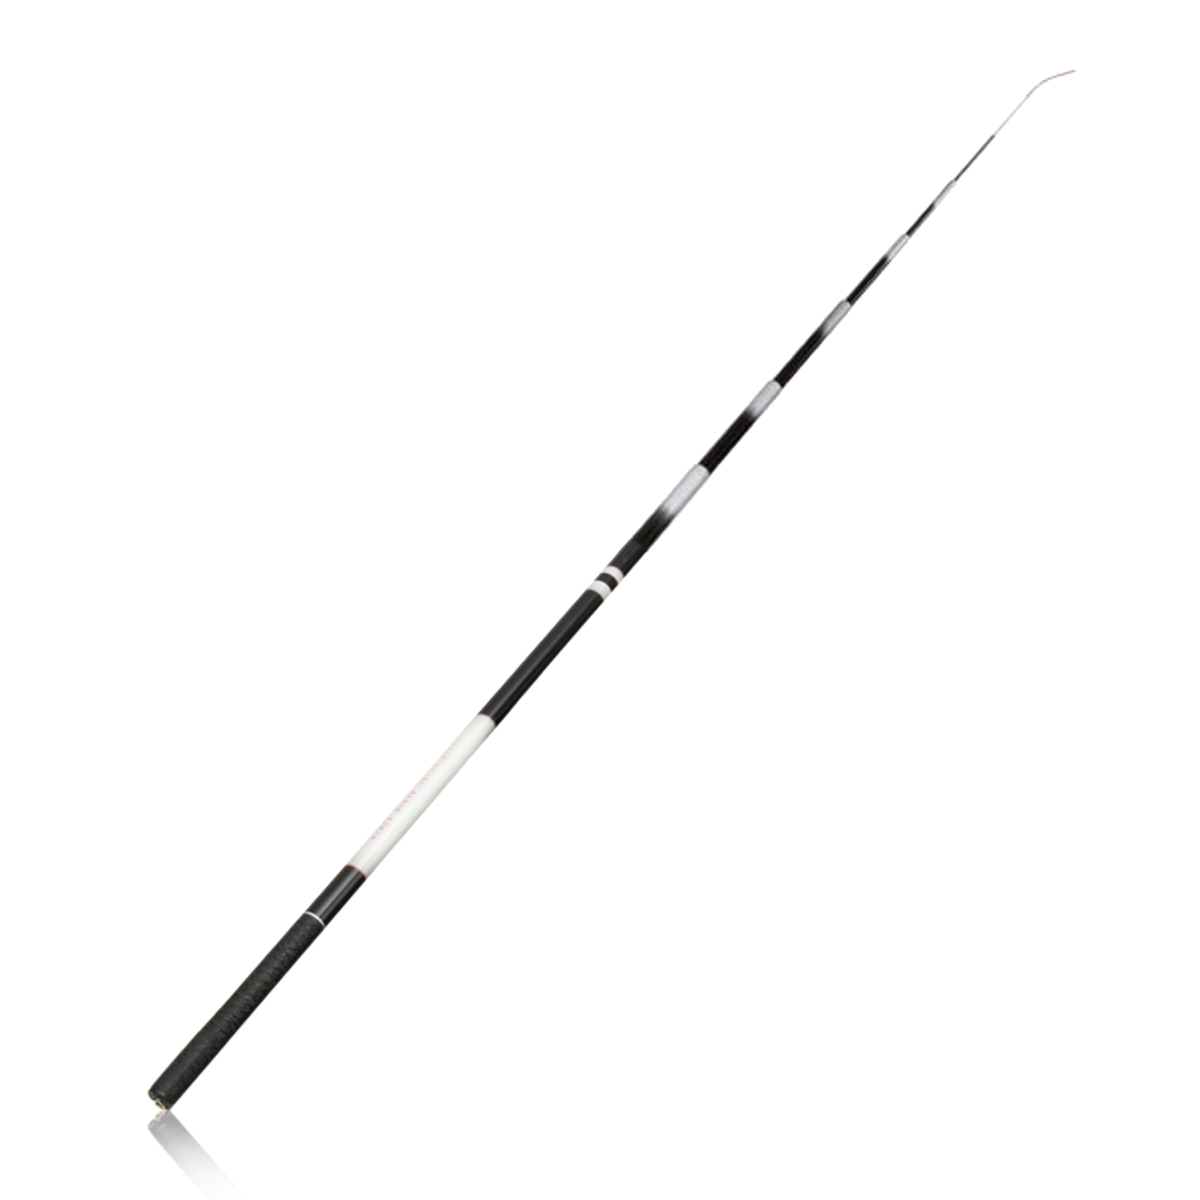 34M49M-Fiberglass-Hand-Fishing-Rod-Ultra-Hard-Collapsible-Fishing-Pole-1430936-2